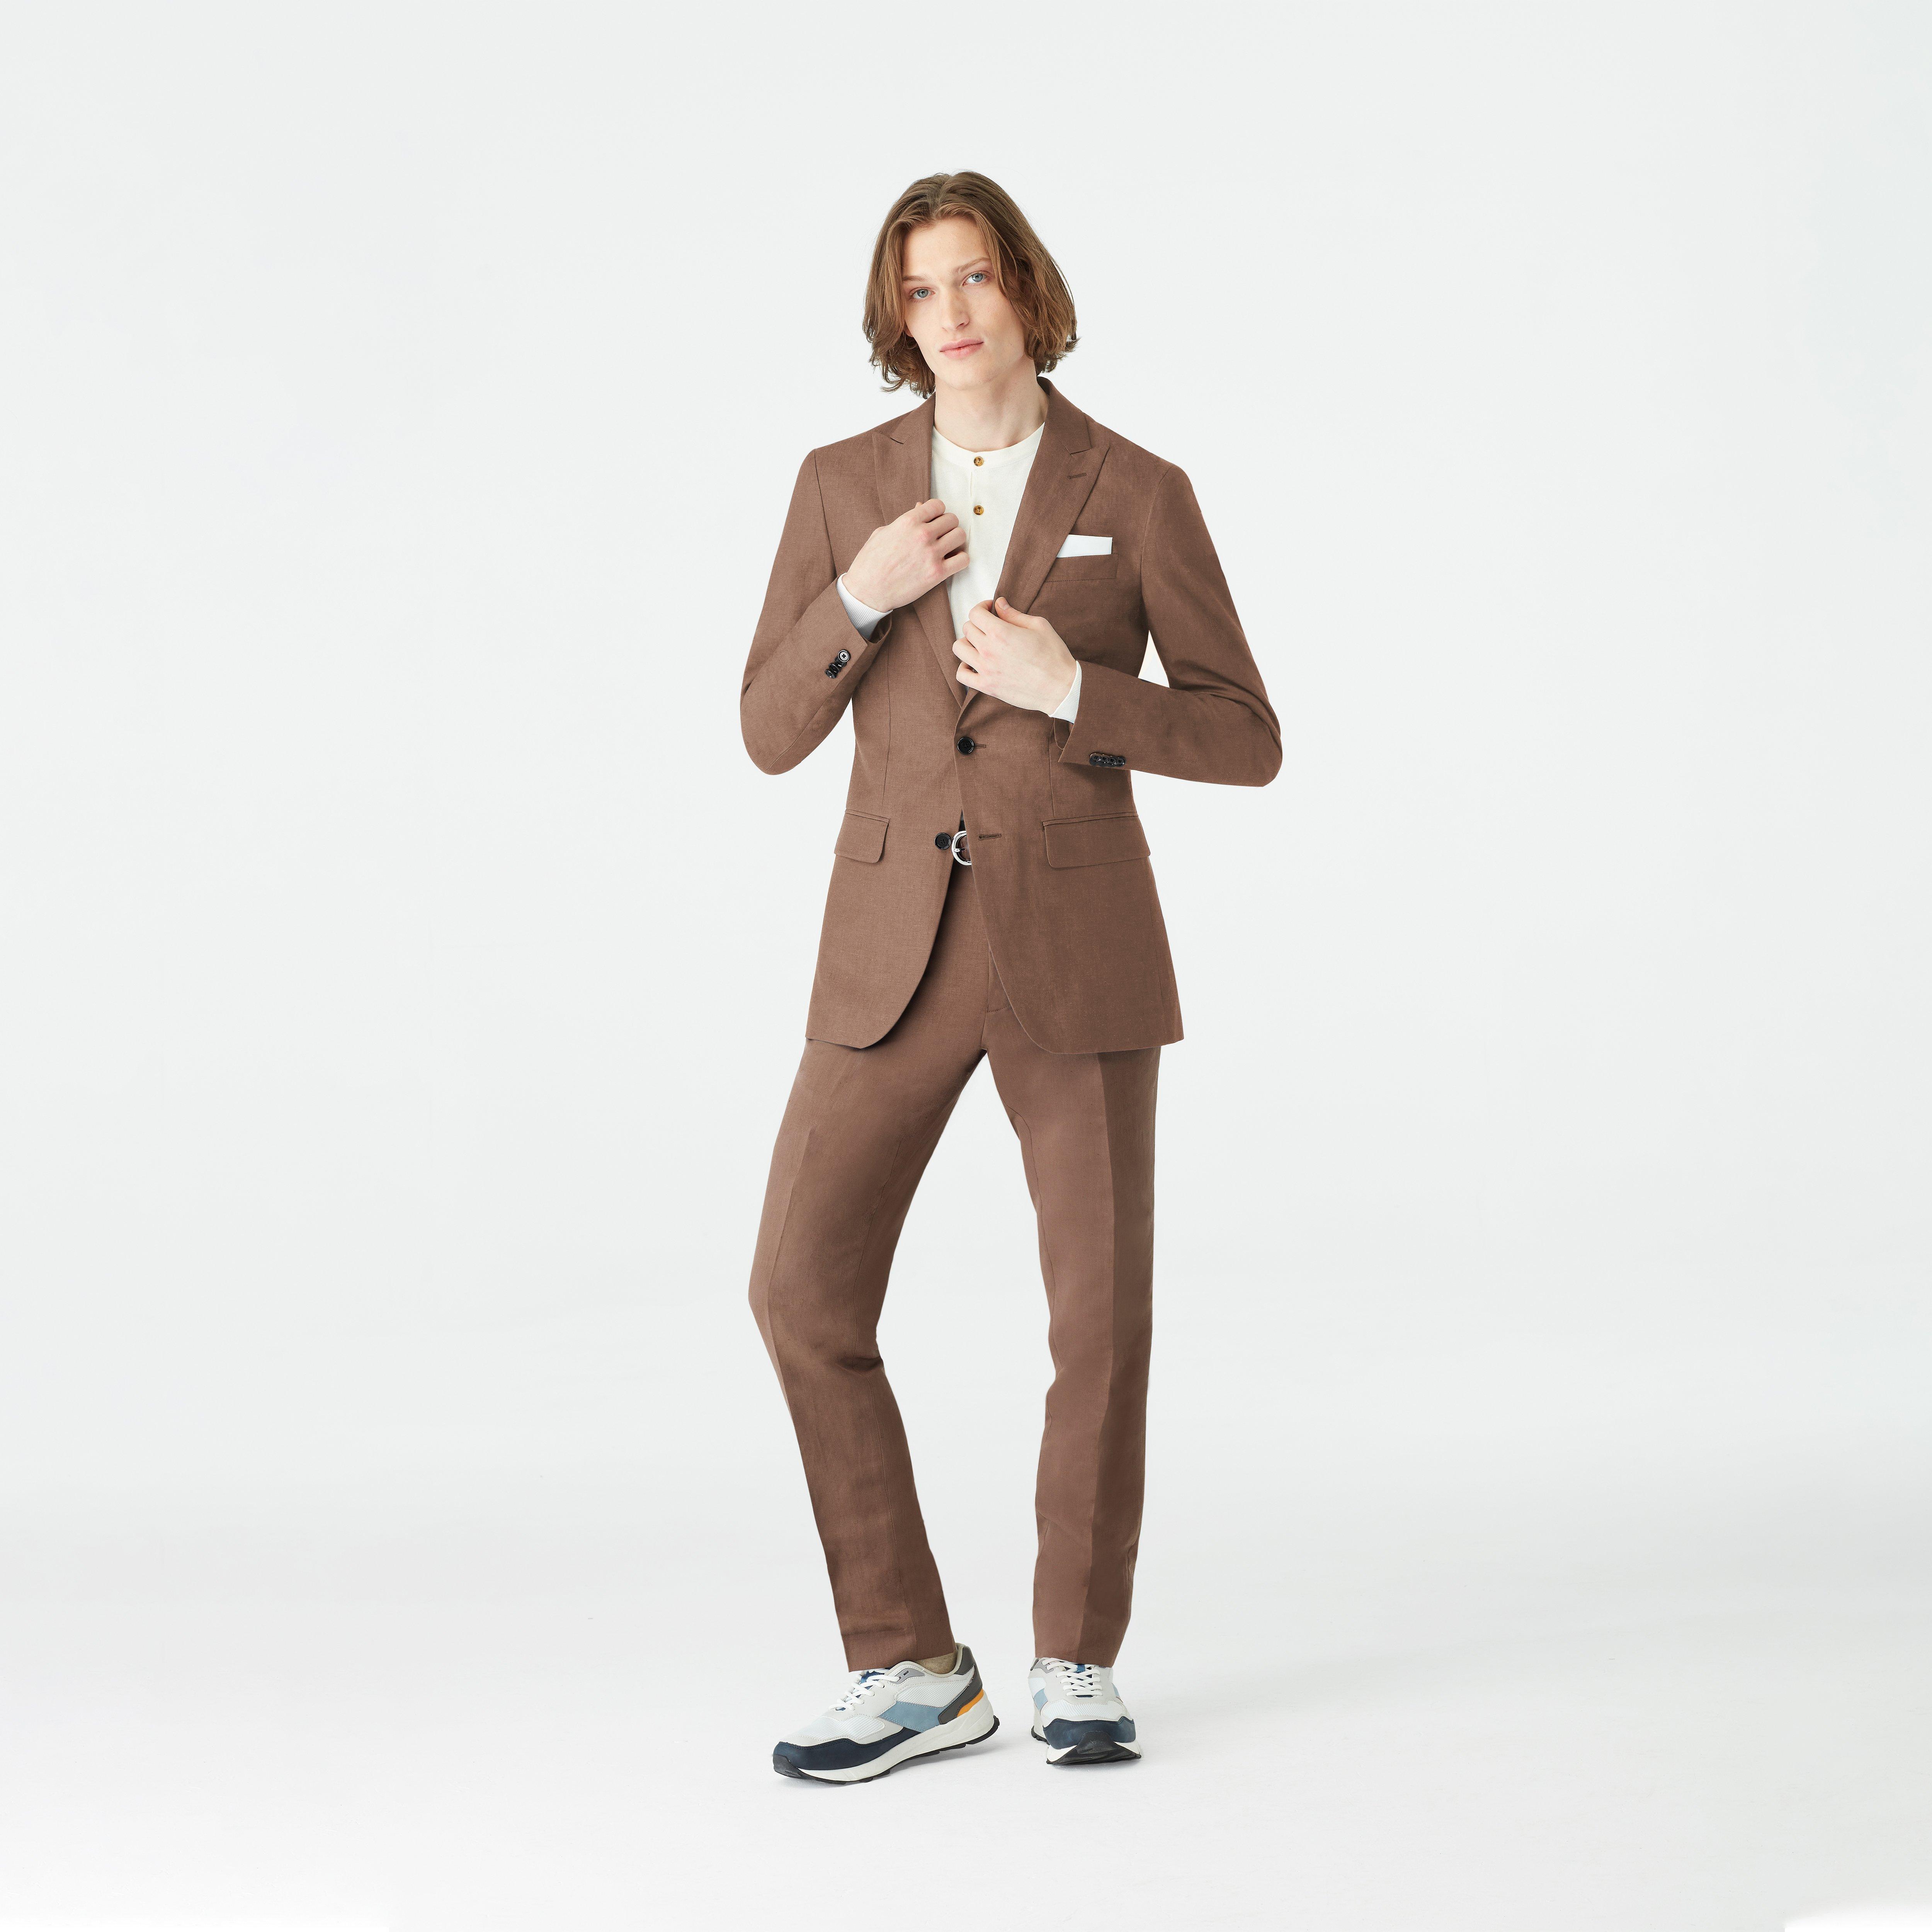 Kentford Linen Silk Teal Suit (3124ec500c1fbfa7663923ea19d27997)